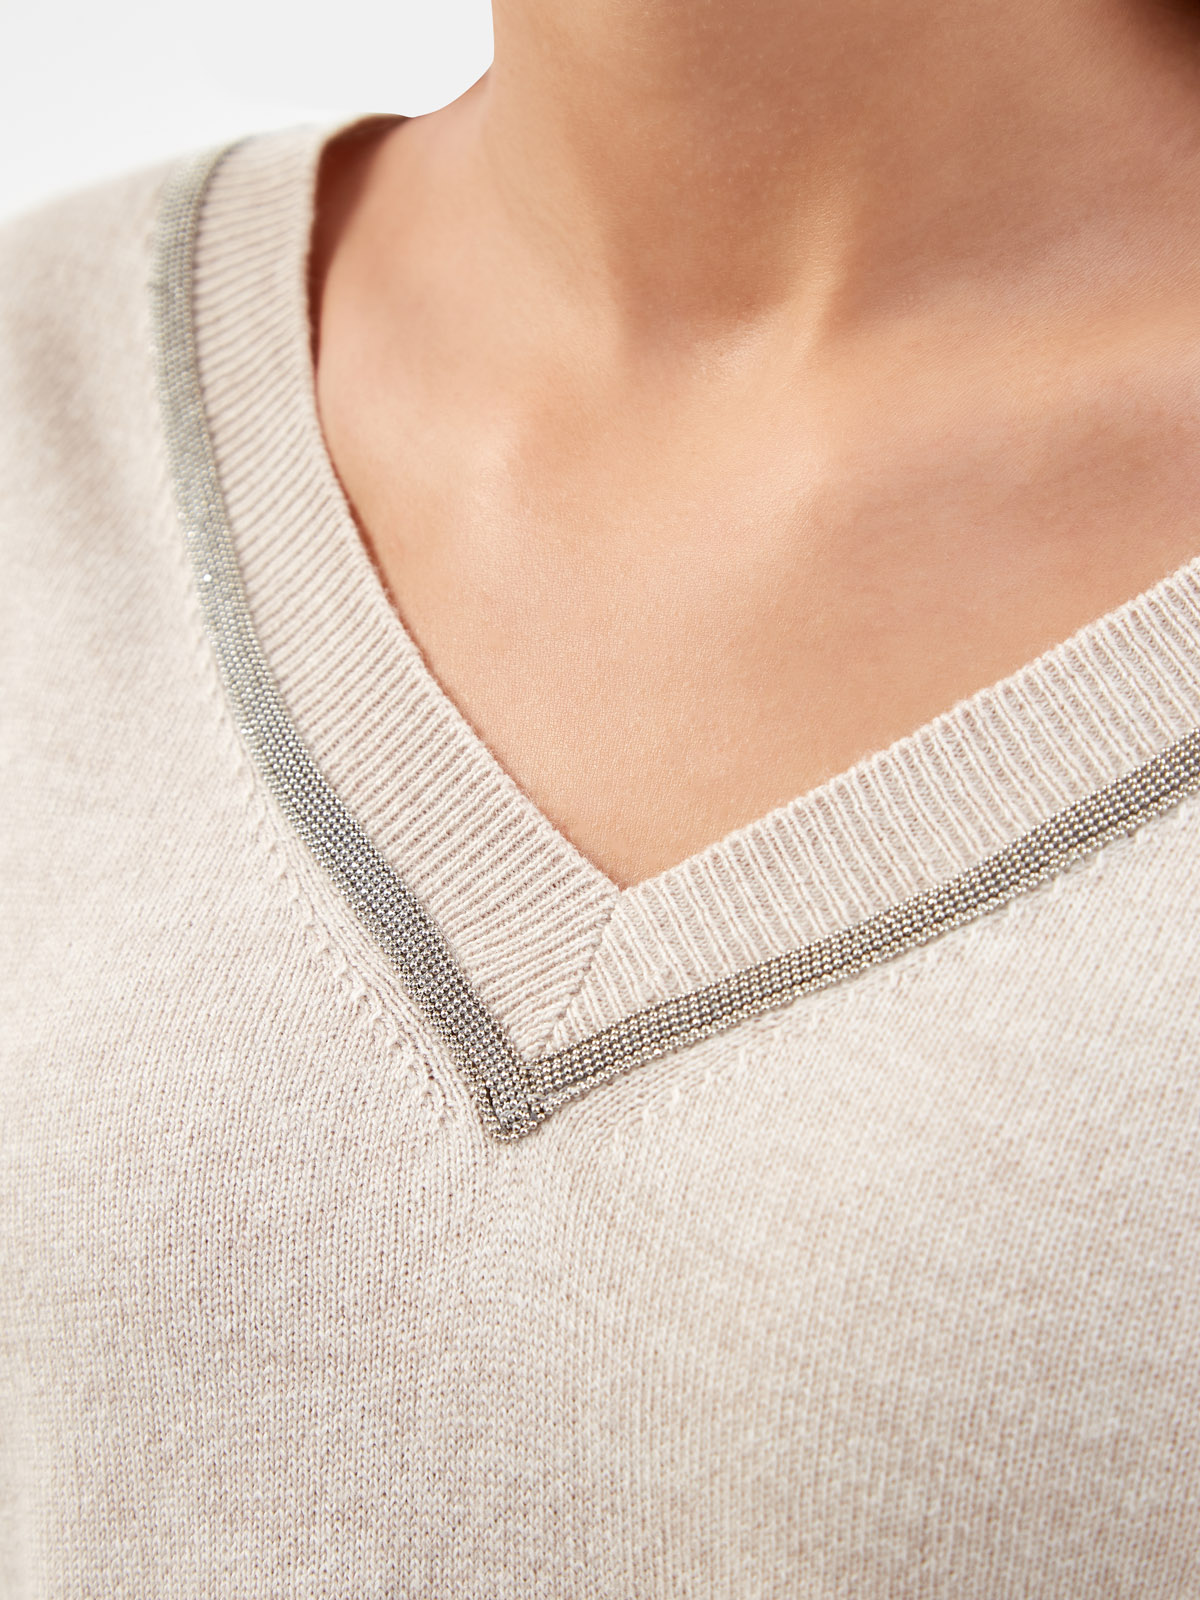 Пуловер из пряжи Platinum с окантовкой рядами цепочек FABIANA FILIPPI, цвет бежевый, размер 40;42;44;46;48 - фото 5